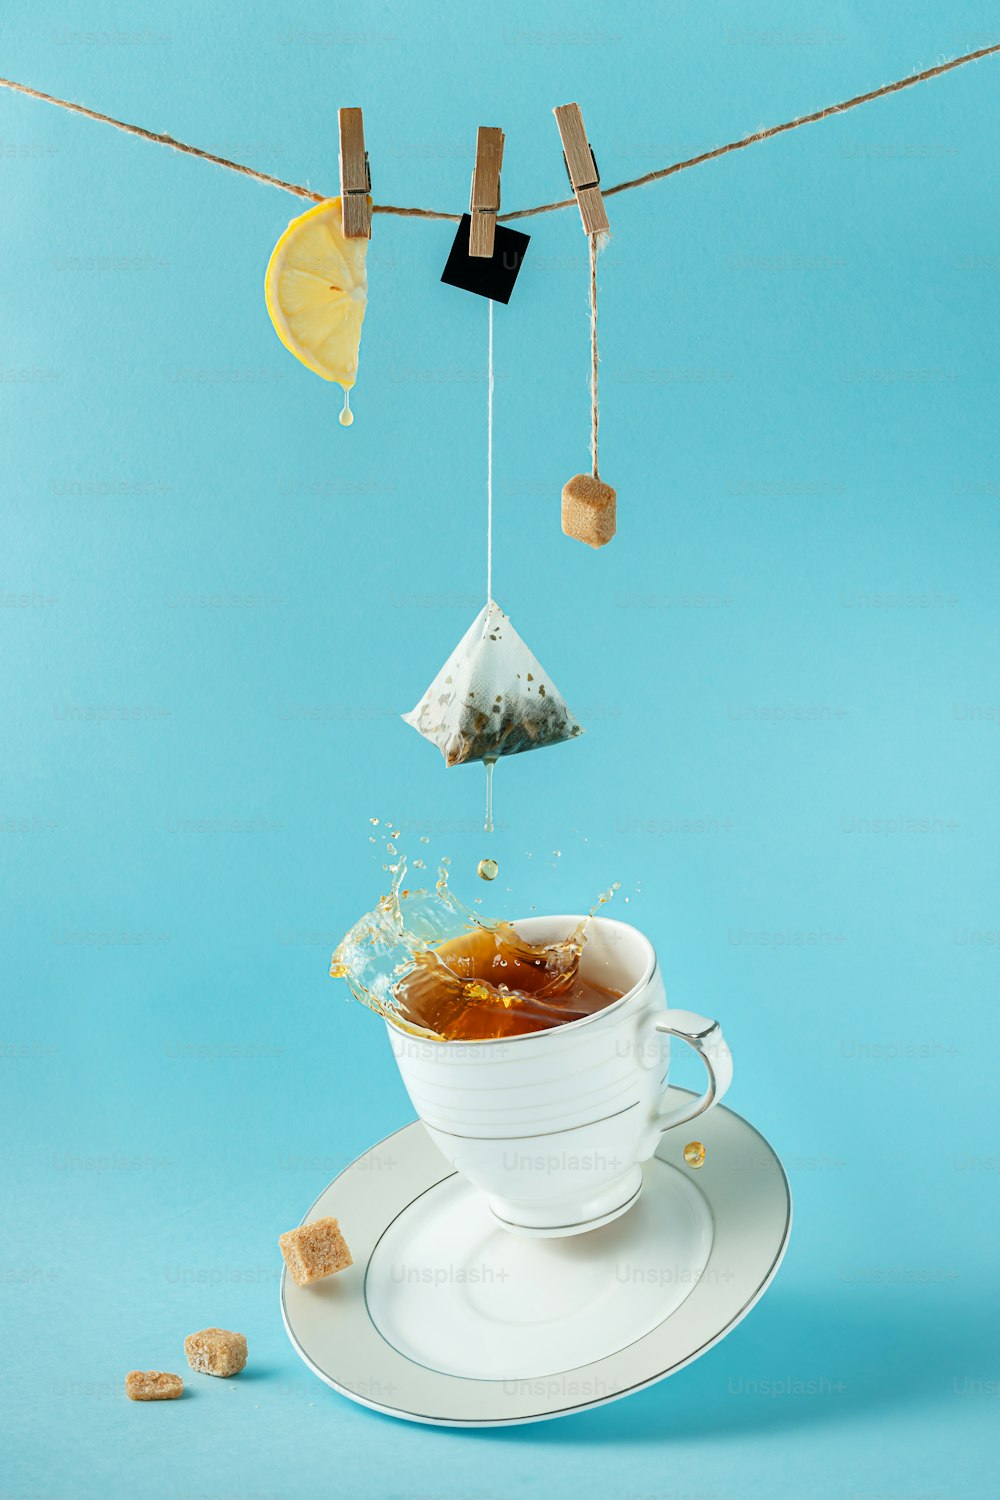 ティーバッグ、レモン、砂糖がロープにぶら下がっていて、青い背景にカップにお茶がはねかけています。創作静物画